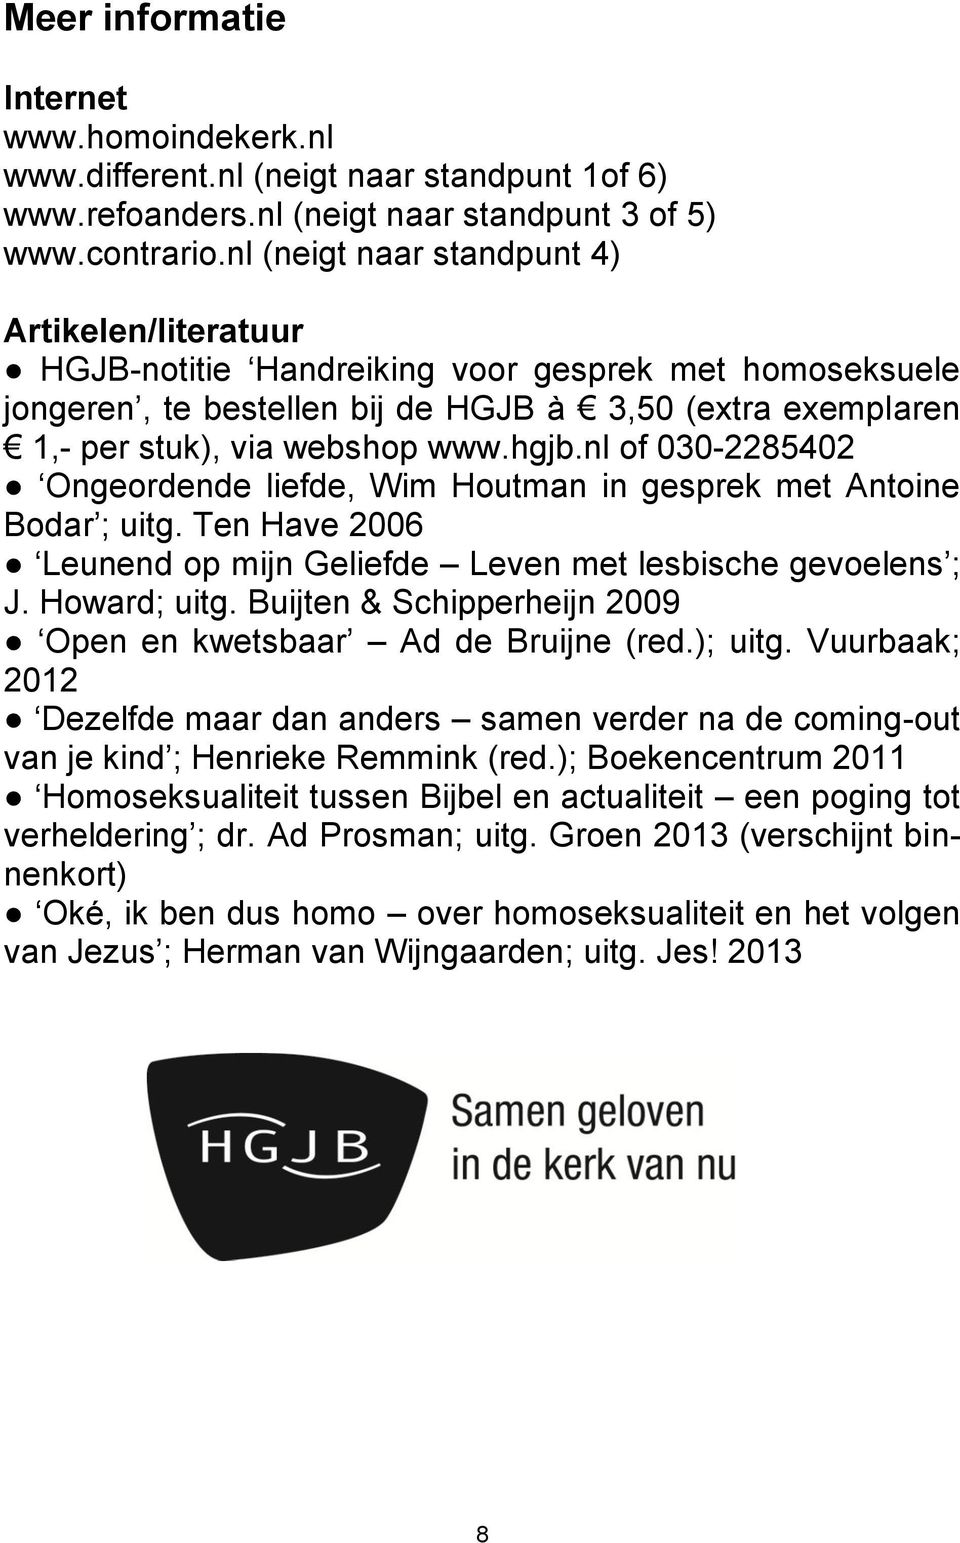 nl of 030-2285402 Ongeordende liefde, Wim Houtman in gesprek met Antoine Bodar ; uitg. Ten Have 2006 Leunend op mijn Geliefde Leven met lesbische gevoelens ; J. Howard; uitg.